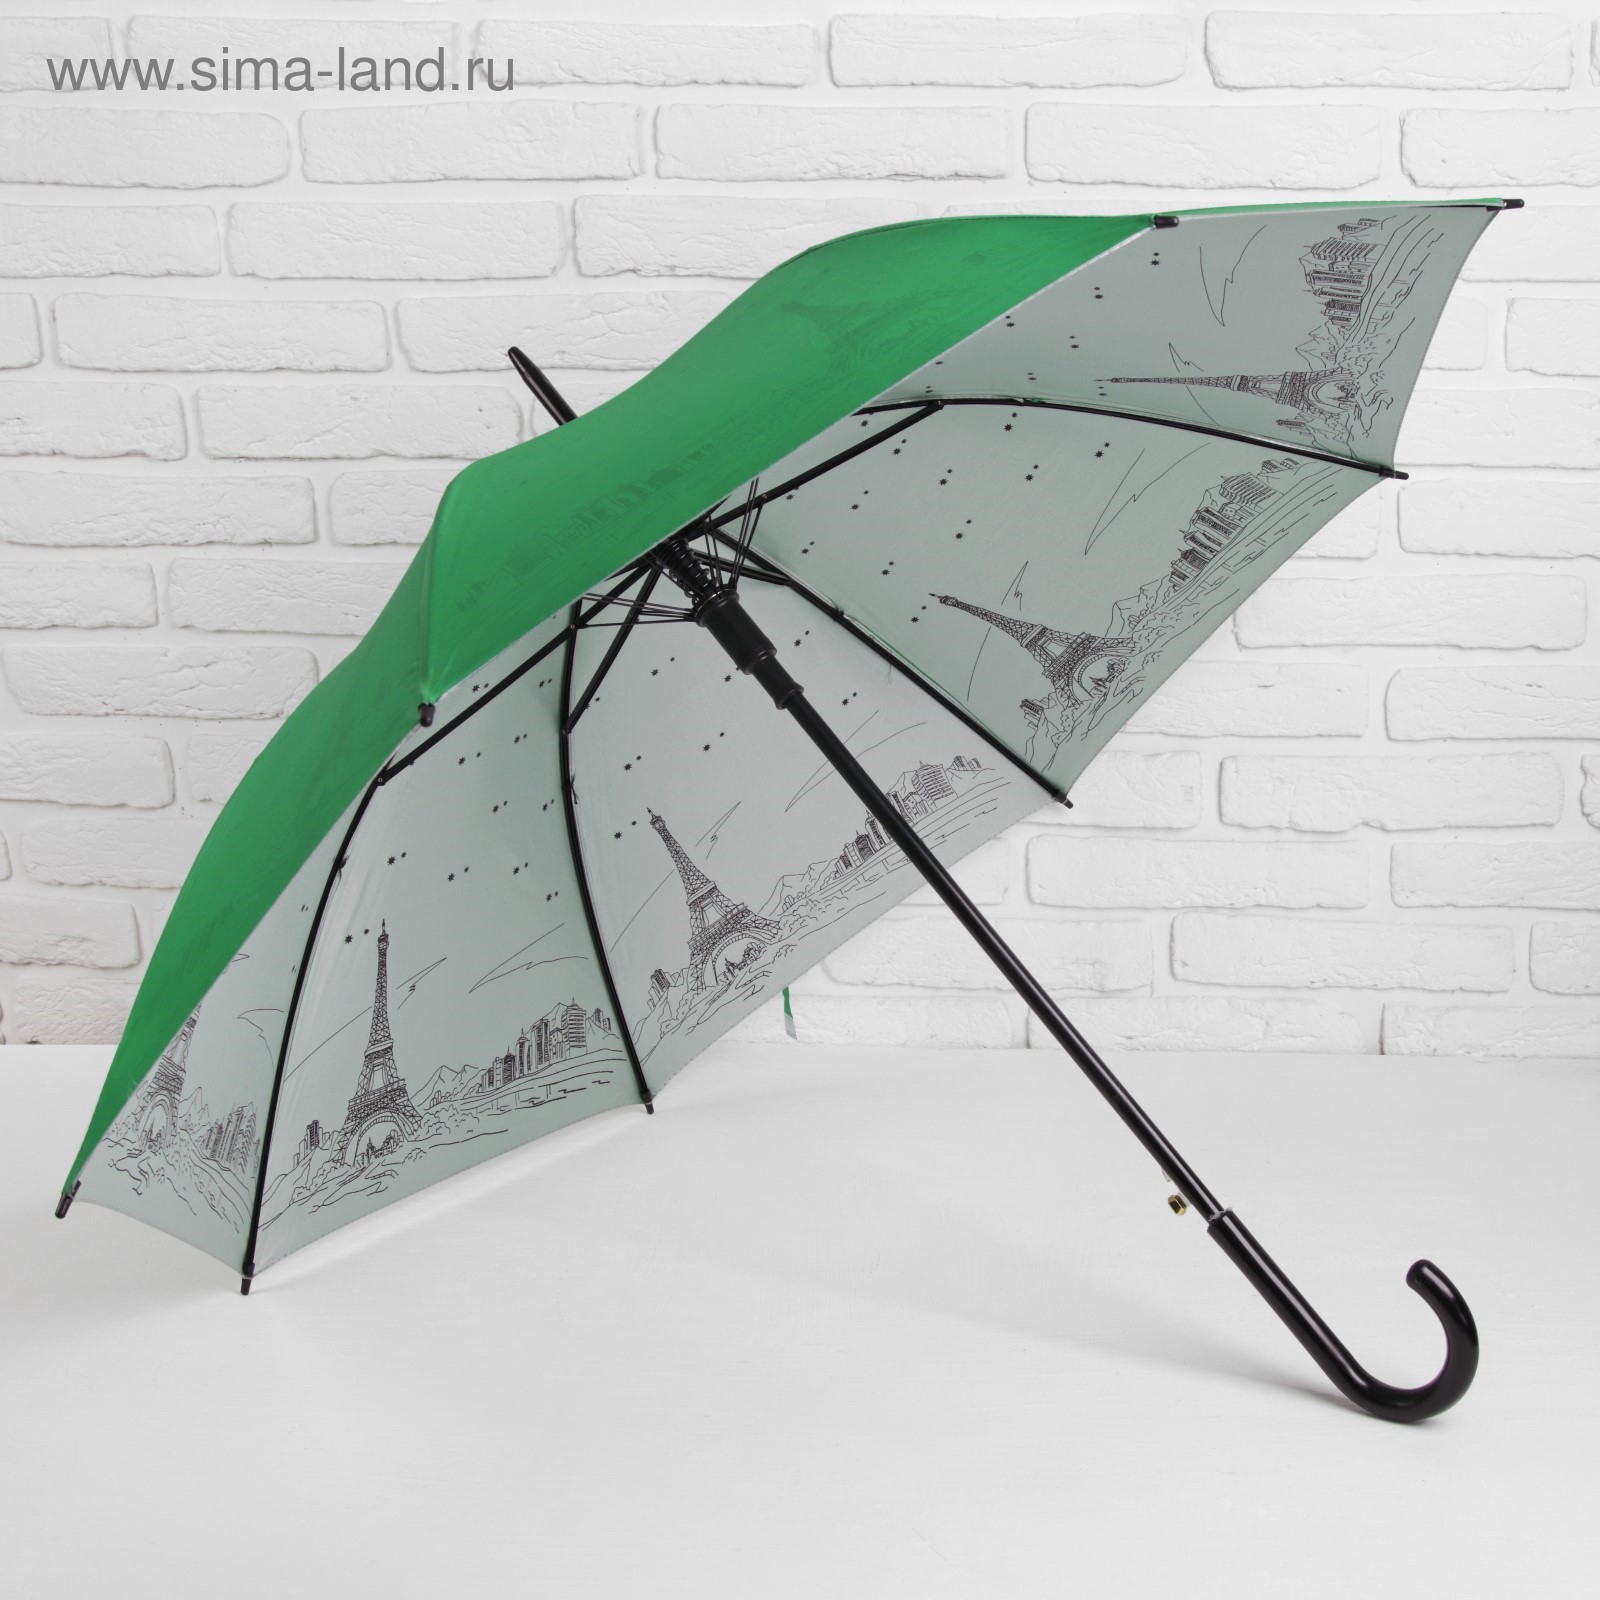  зонты самые прочные и надежные отзывы: Рейтинг лучших зонтов .